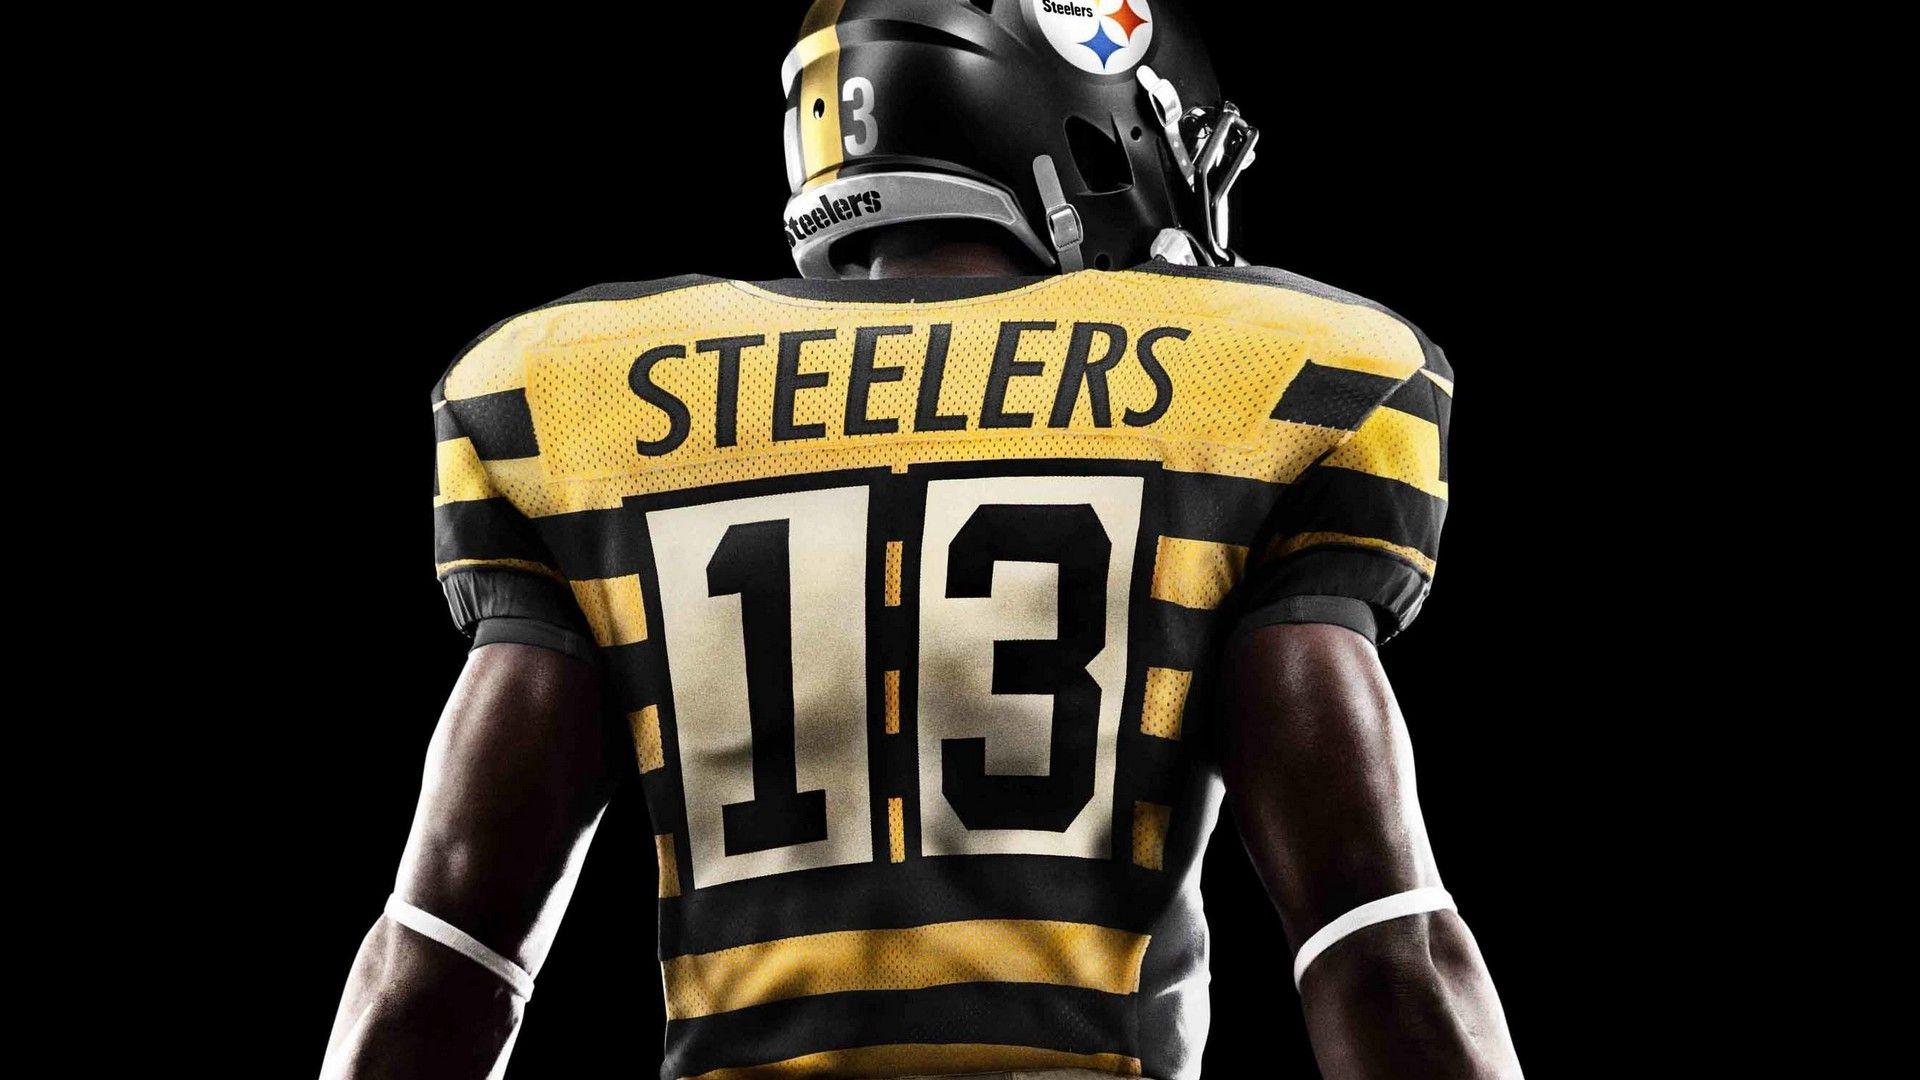 Pitt Steelers HD Wallpaper. Nfl football wallpaper, Football wallpaper, American football